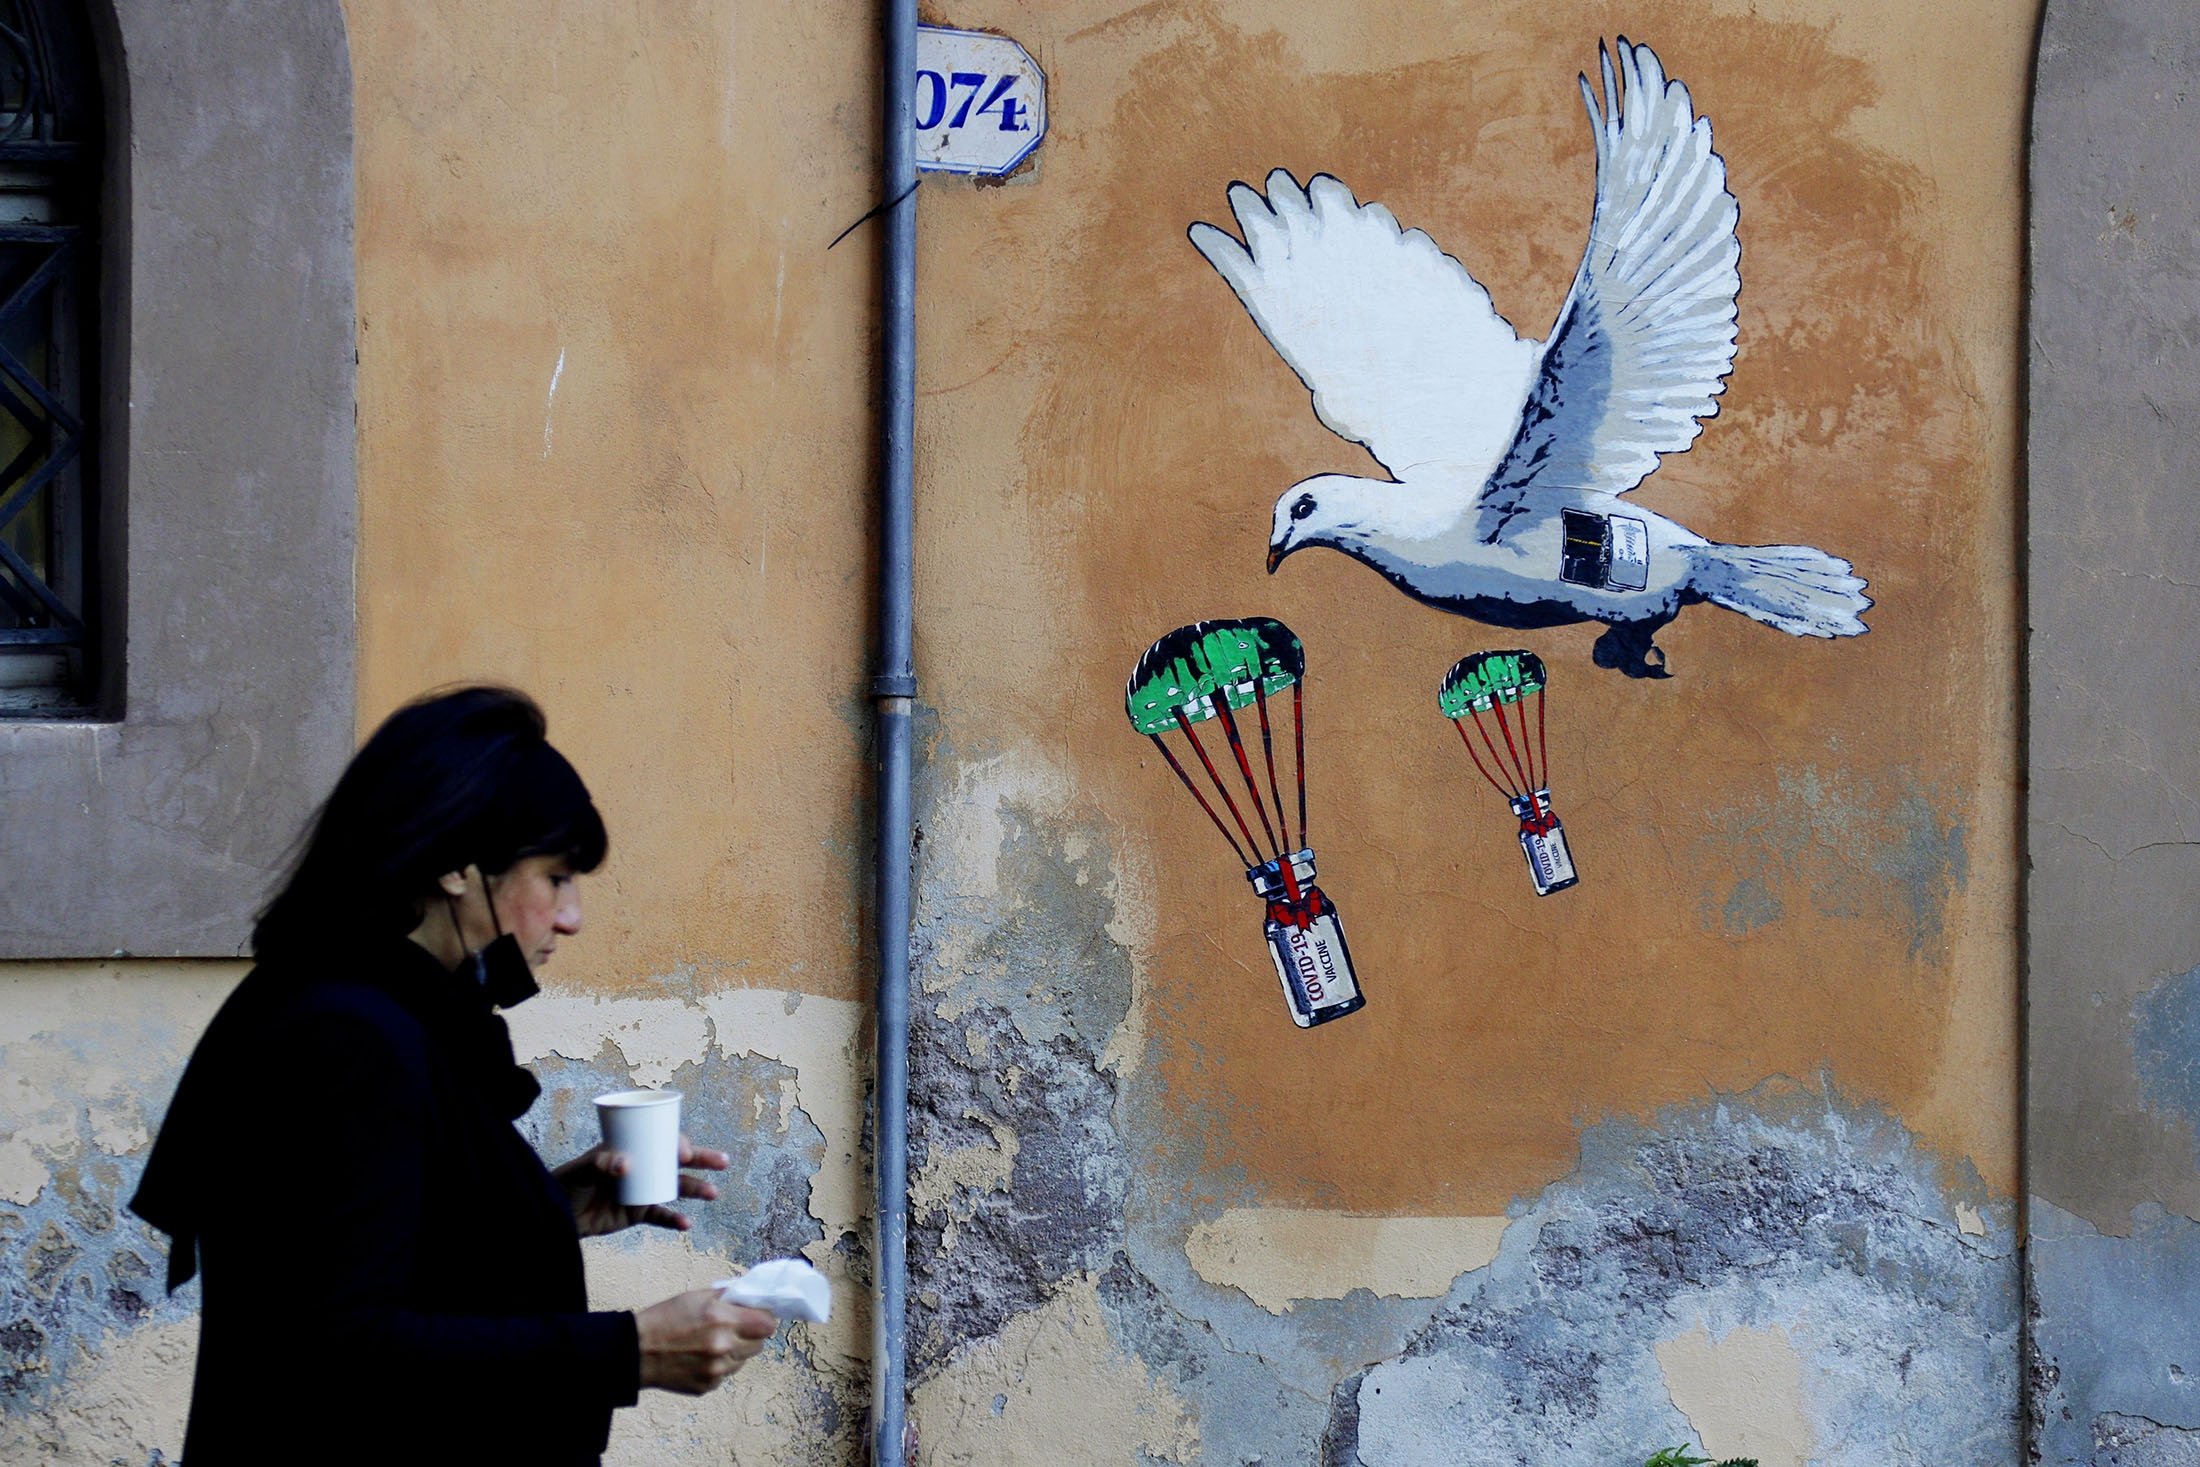 aşı fırlatan beyaz güvercin, sokak sanatı